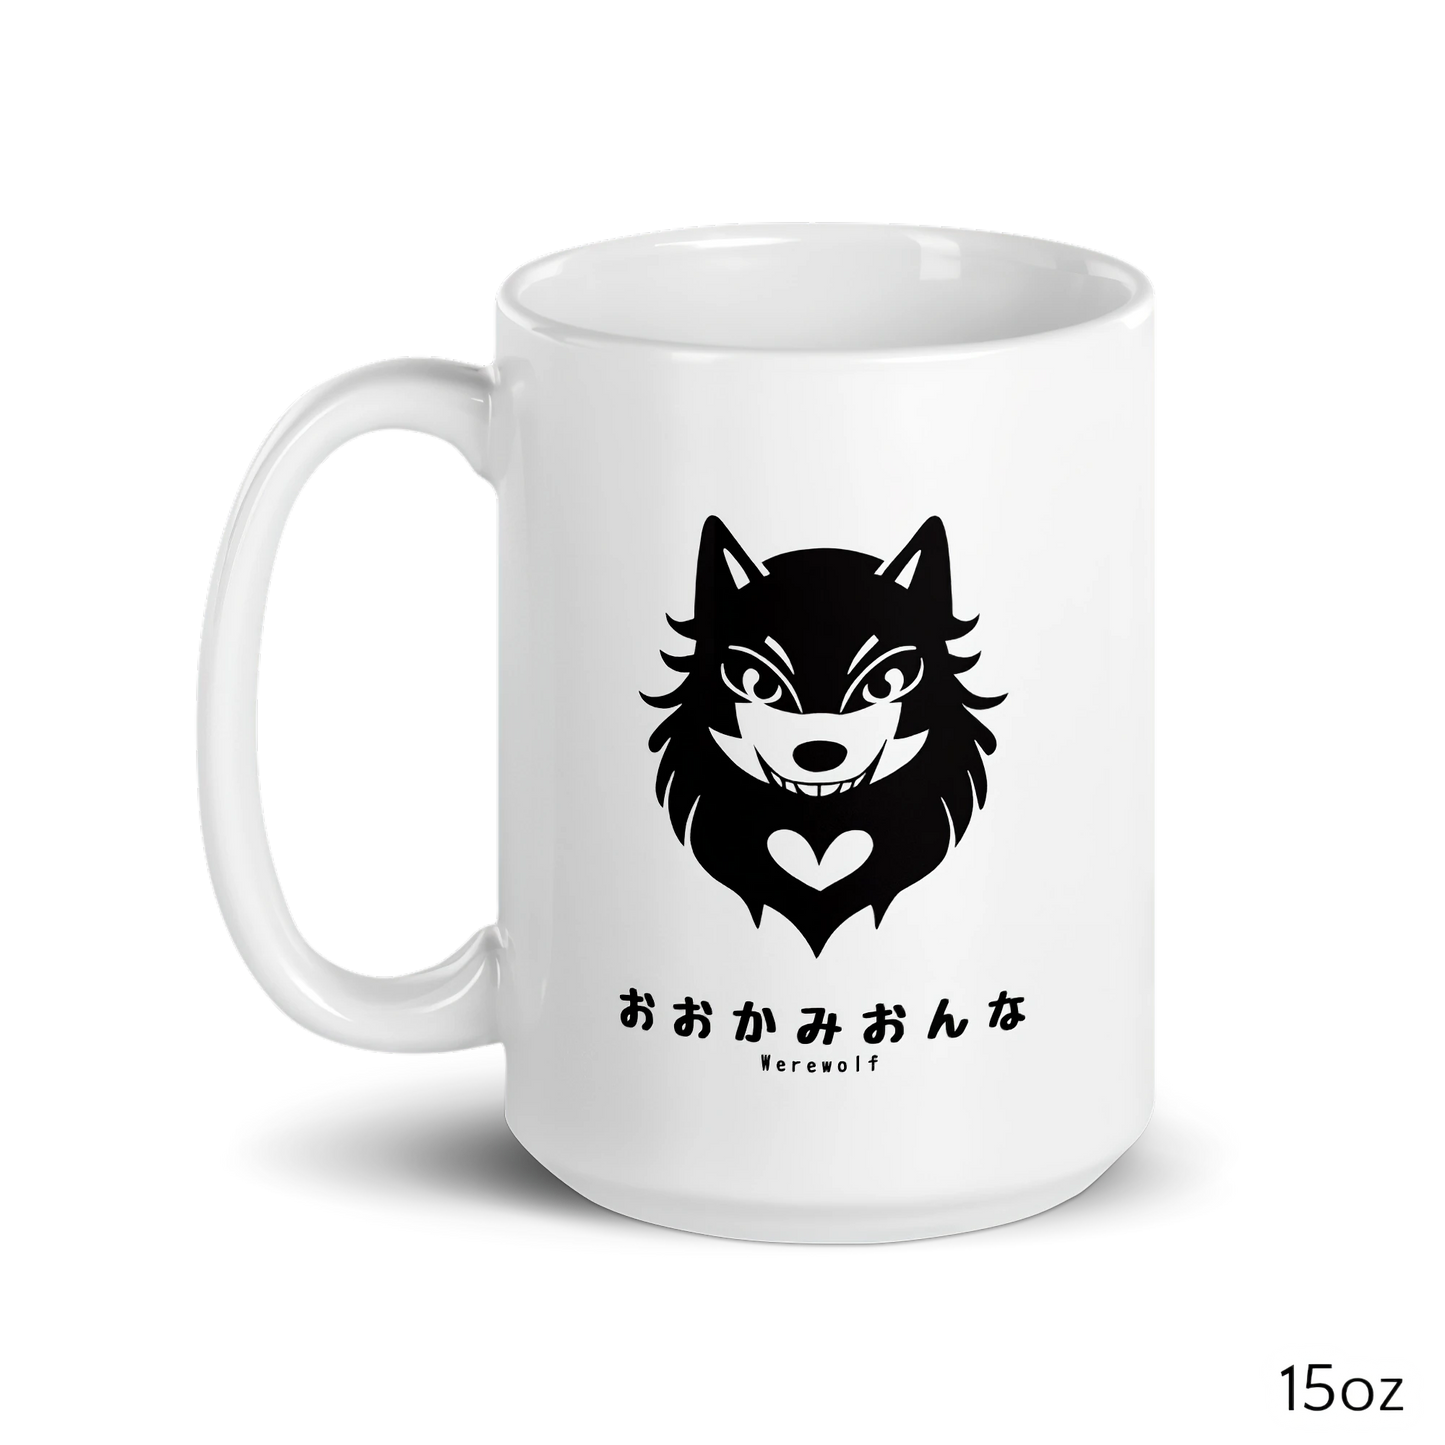 Kawaii Creatures - Werewolf: Ceramic Mug